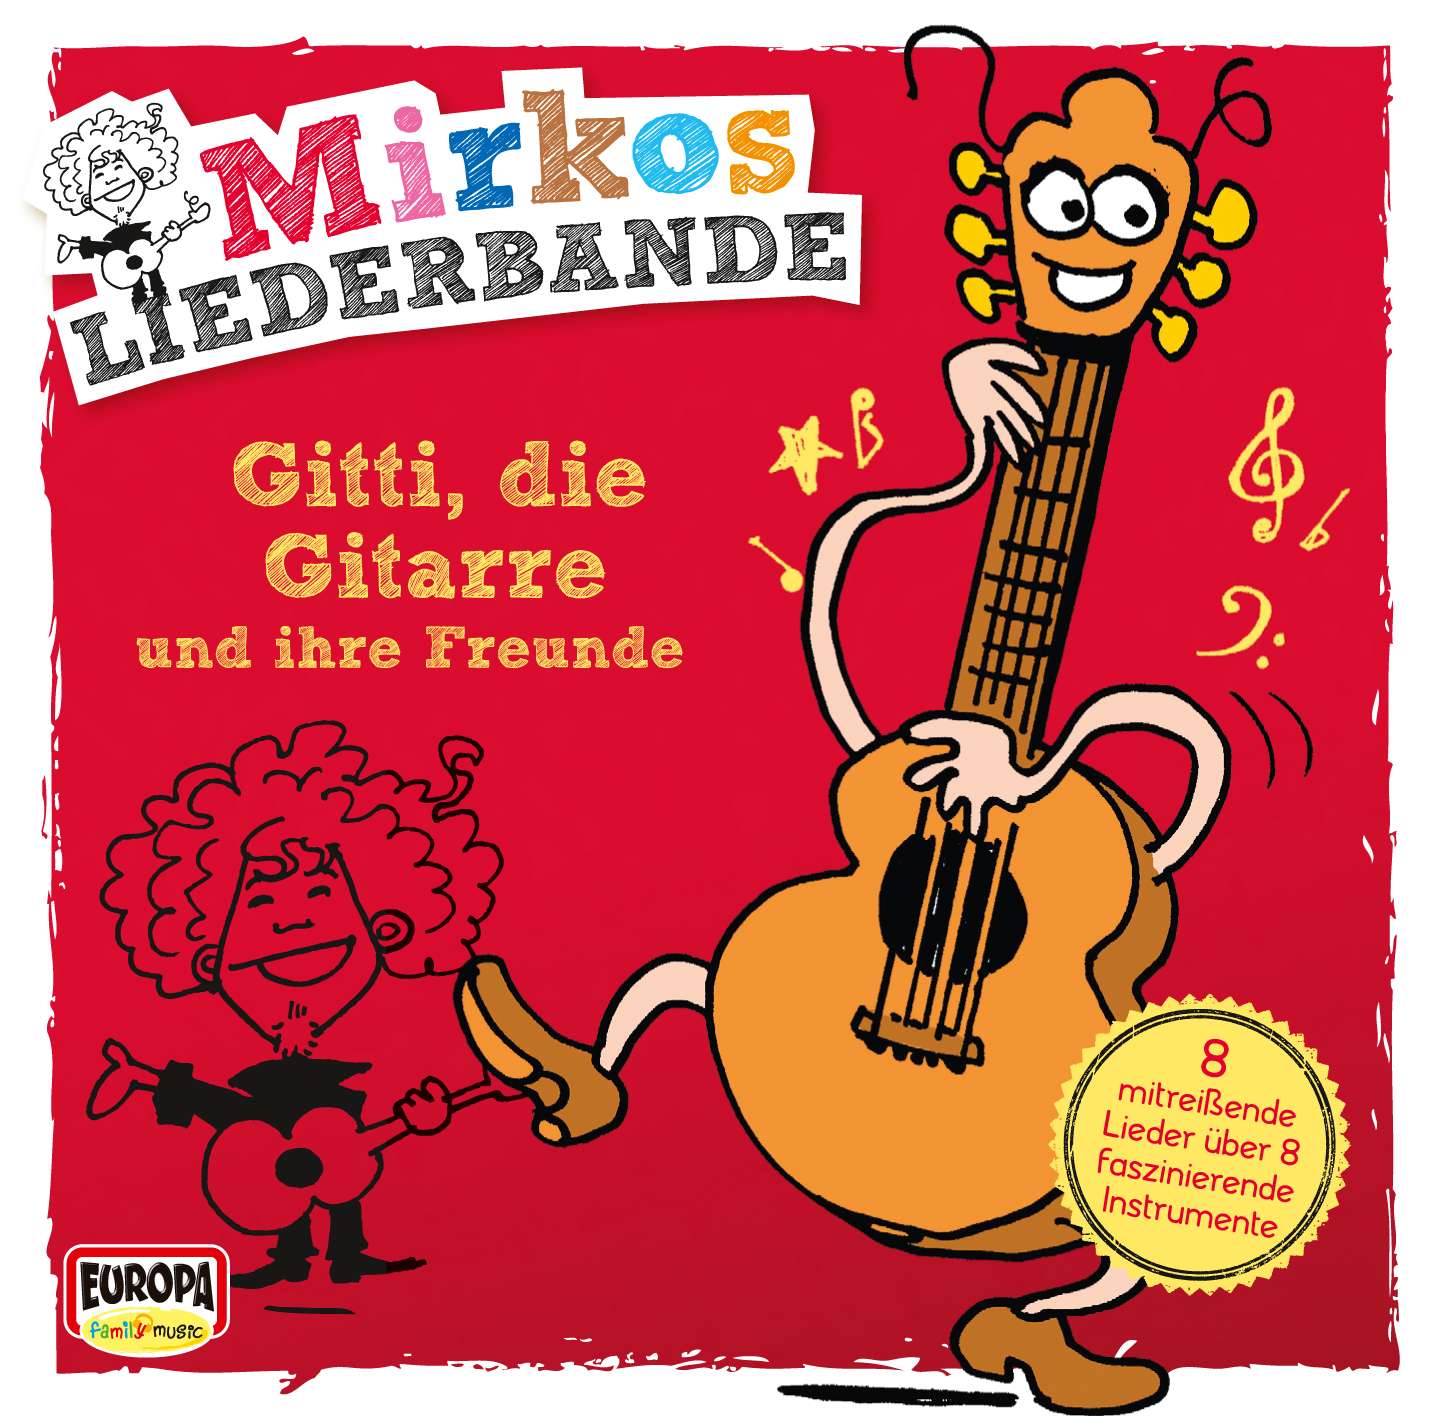 Mirkos Liederbande: Gitti, die Gitarre